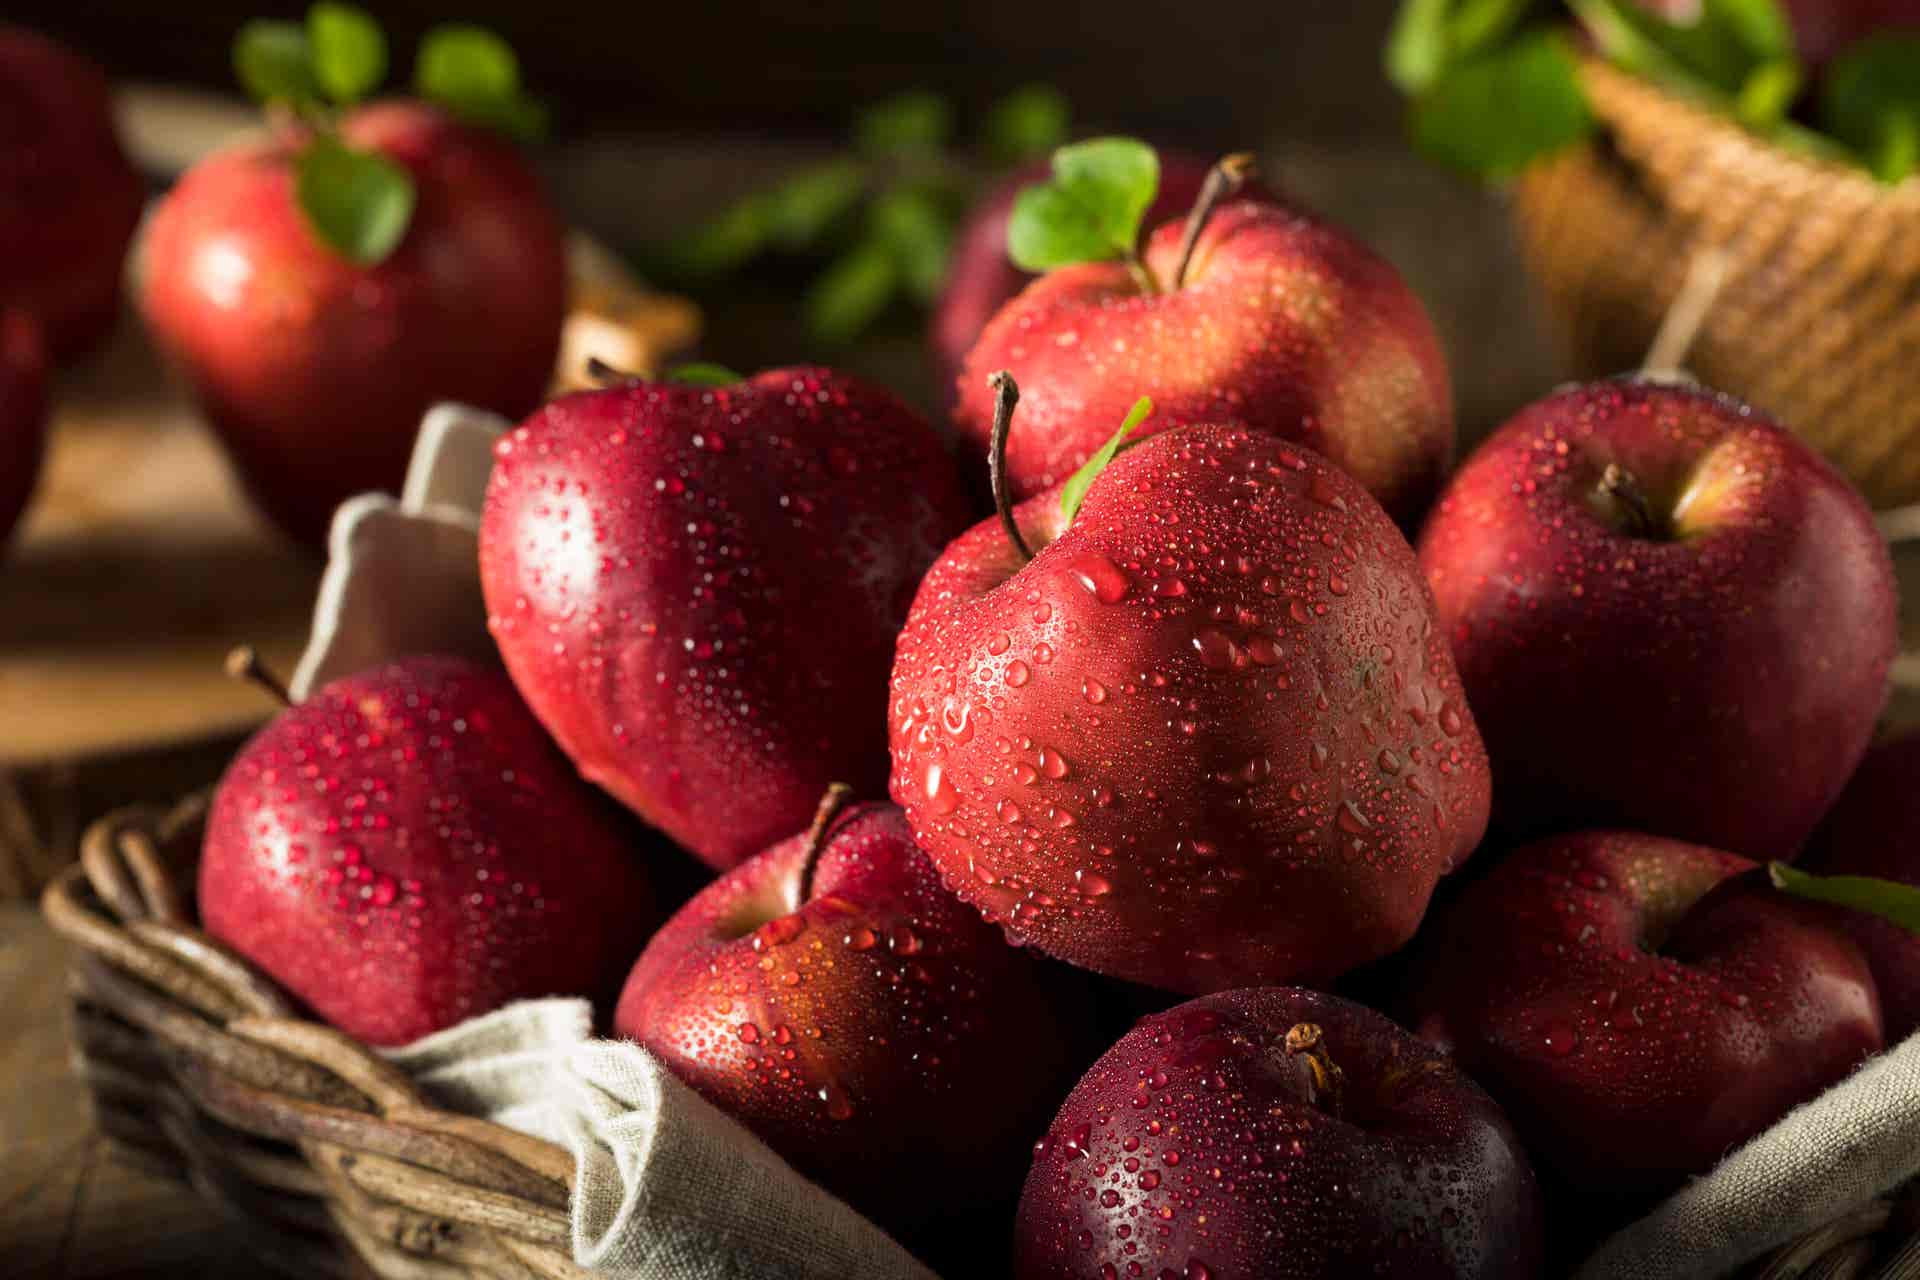 Manzanas rojas son fuente de quercetina.